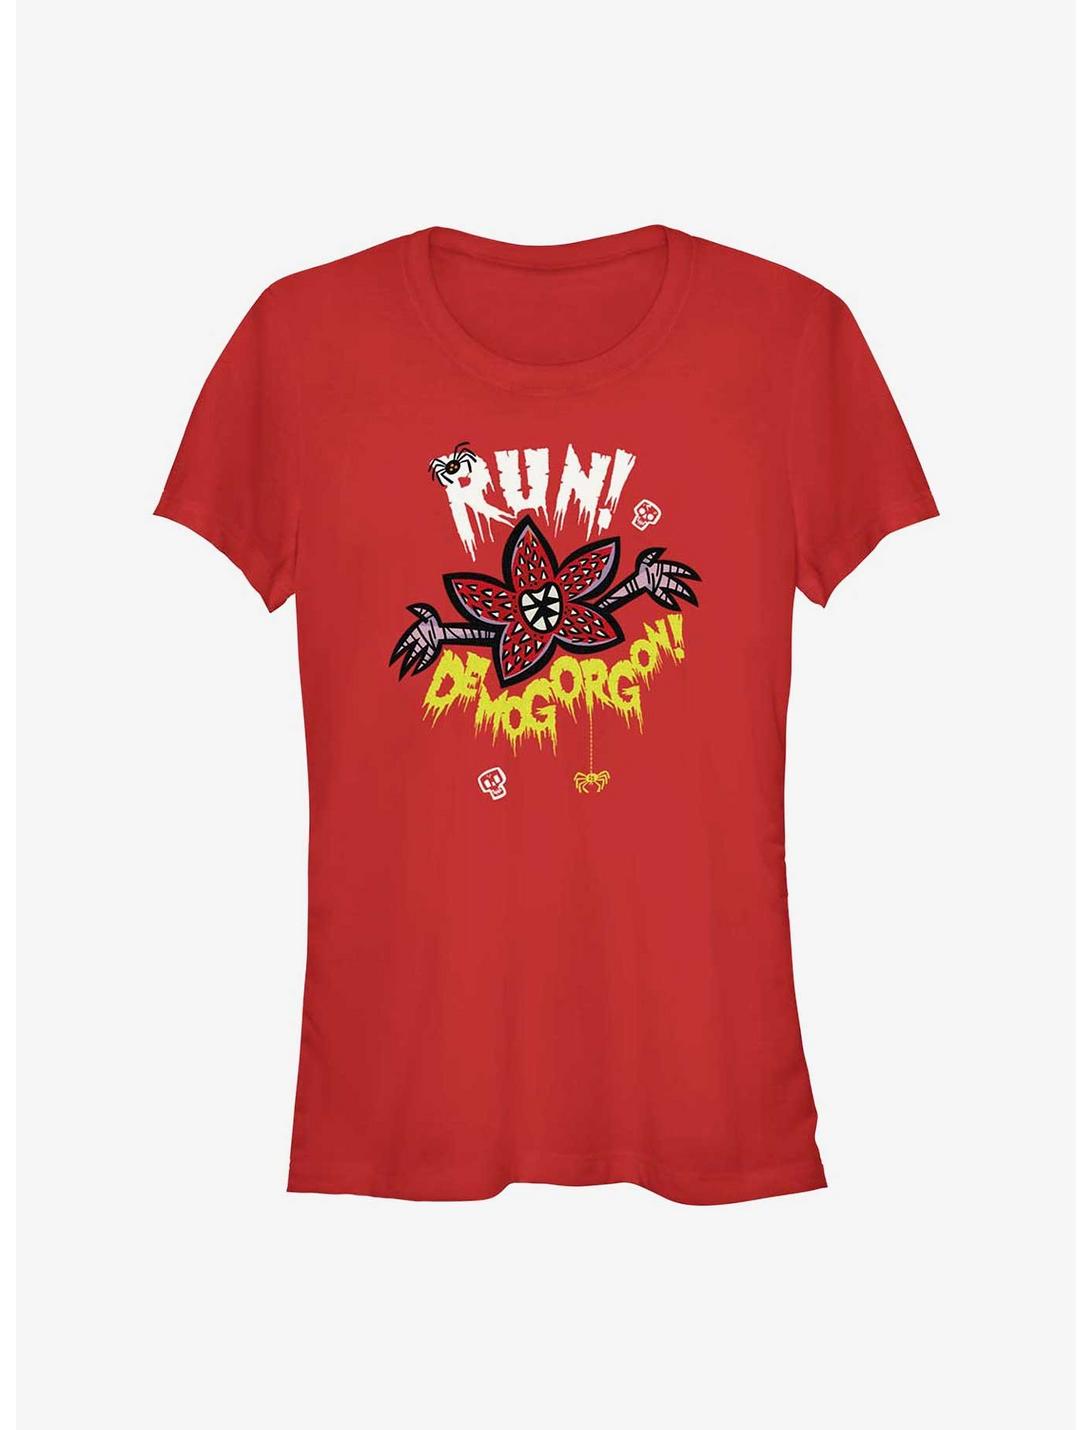 Stranger Things Run Away! Demogorgon! Girls T-Shirt, RED, hi-res